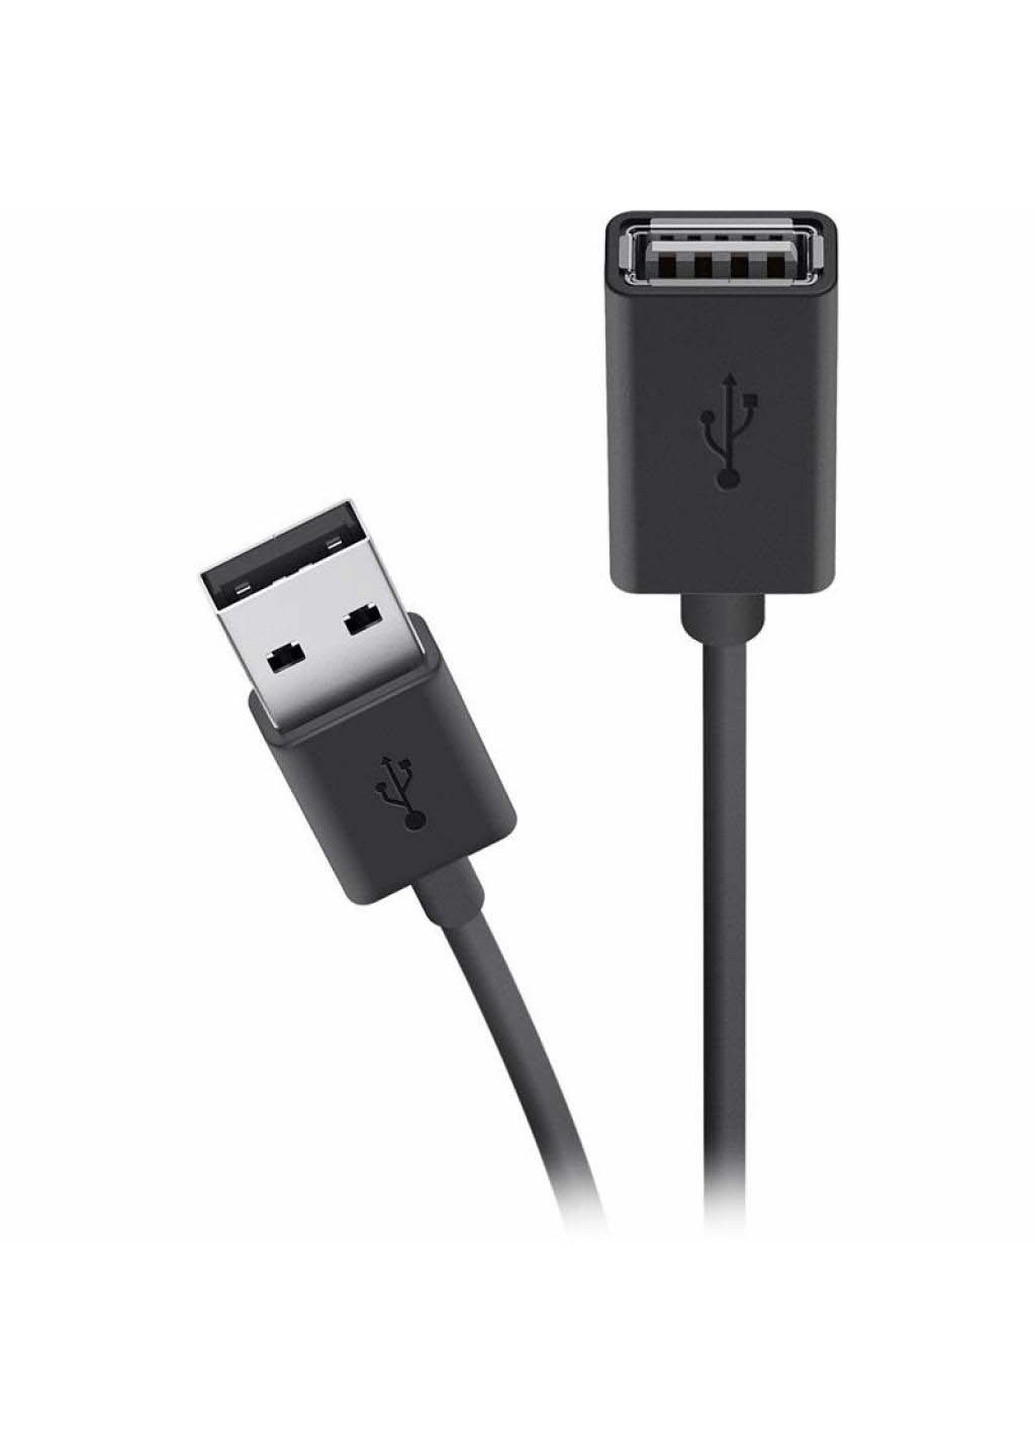 Дата кабель USB 2.0 AM / AF Extension cable 4.8m black (F3U153BT4.8M) Belkin usb 2.0 am/af extension cable 4.8m black (239382637)